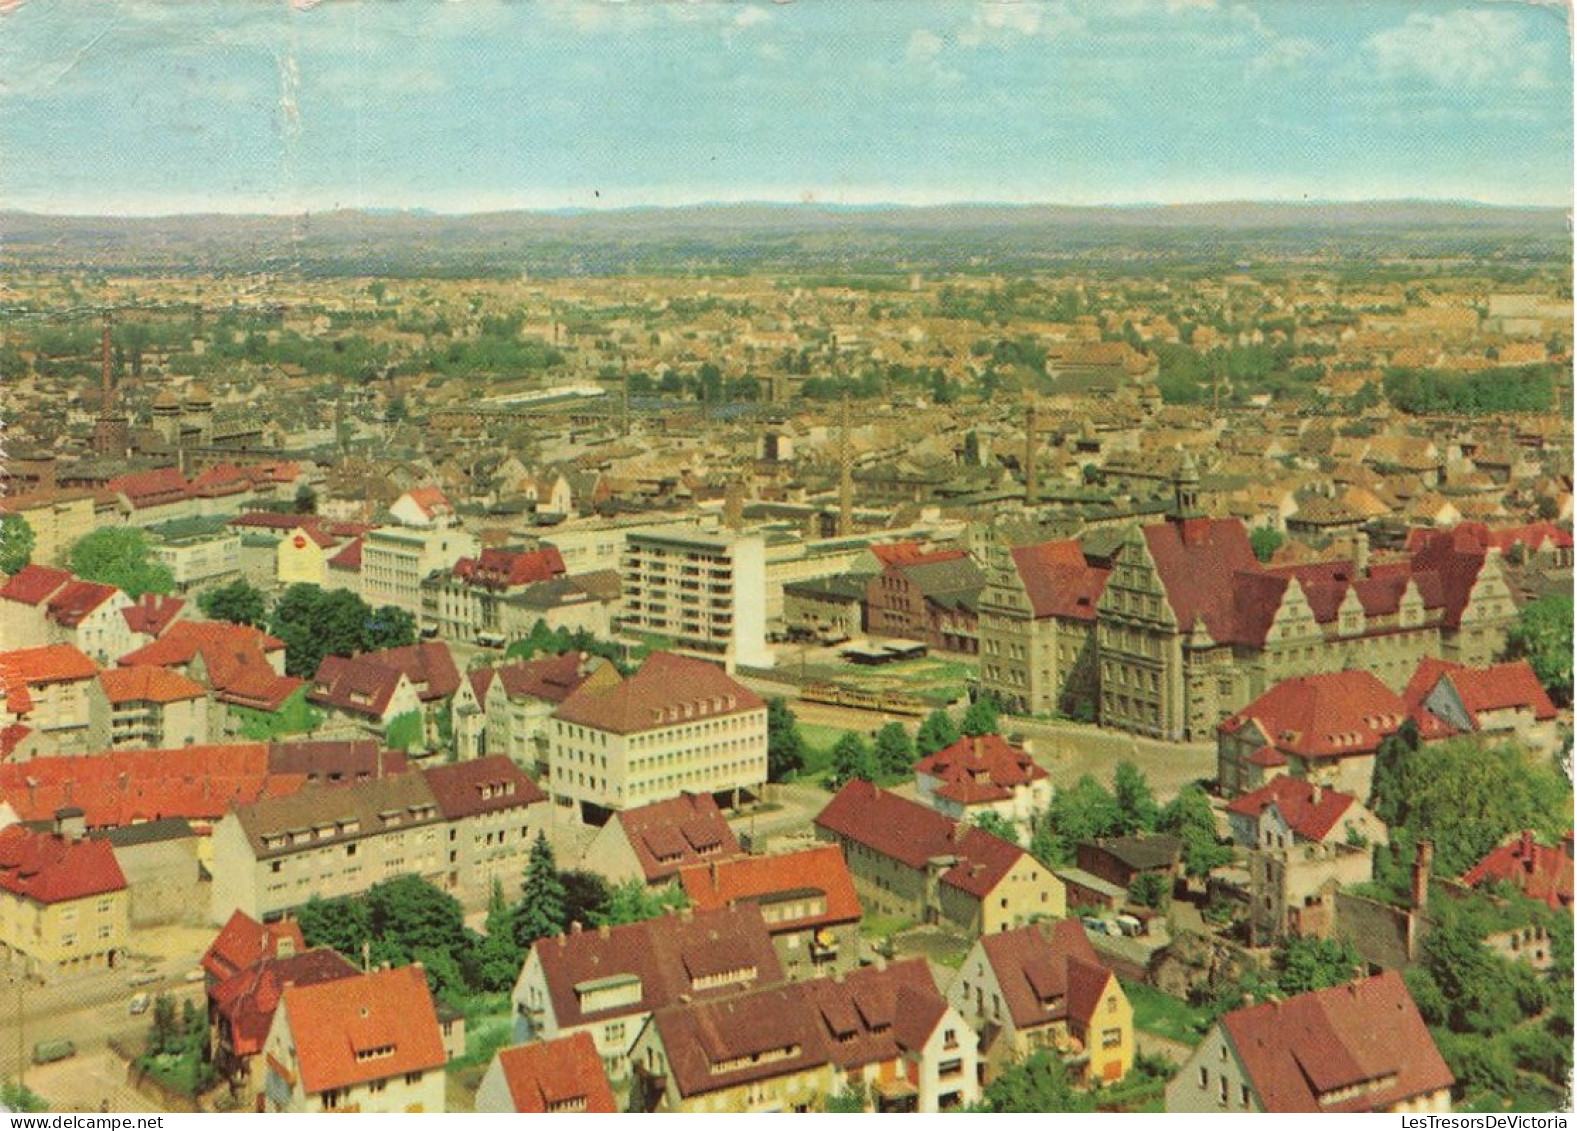 ALLEMAGNE - Bielefeld - Blick Von Der Sparrenburg - Carte Postale - Bielefeld